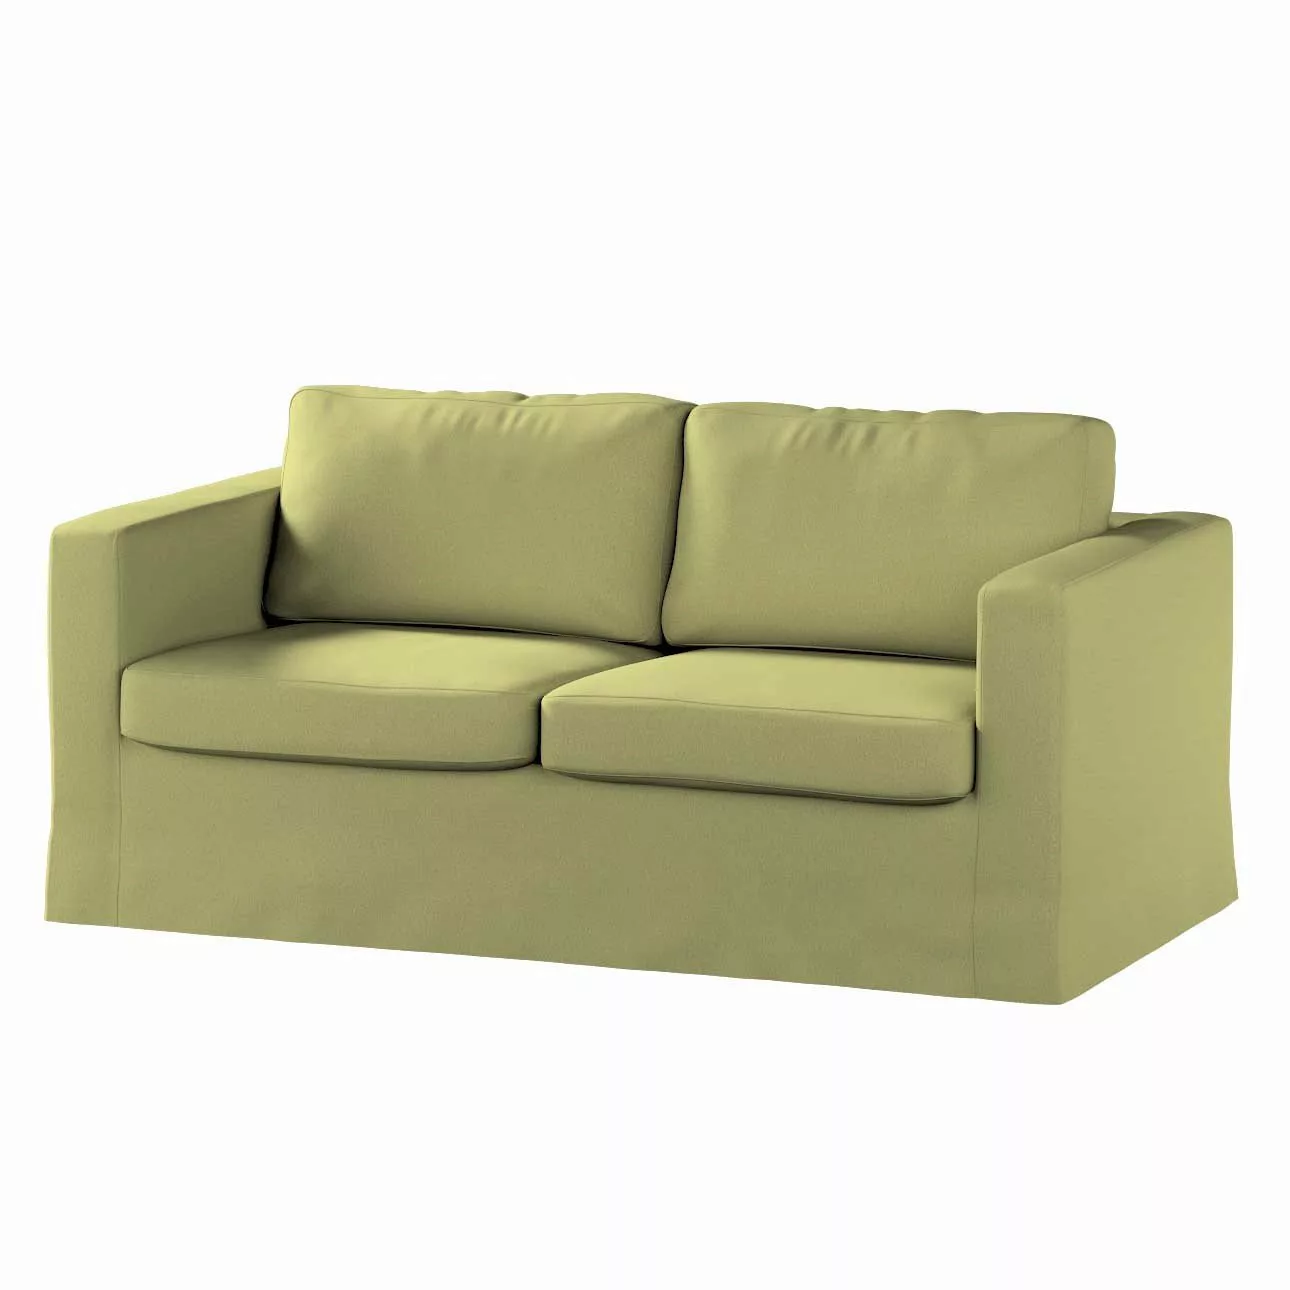 Bezug für Karlstad 2-Sitzer Sofa nicht ausklappbar, lang, salbeigrün, Sofah günstig online kaufen